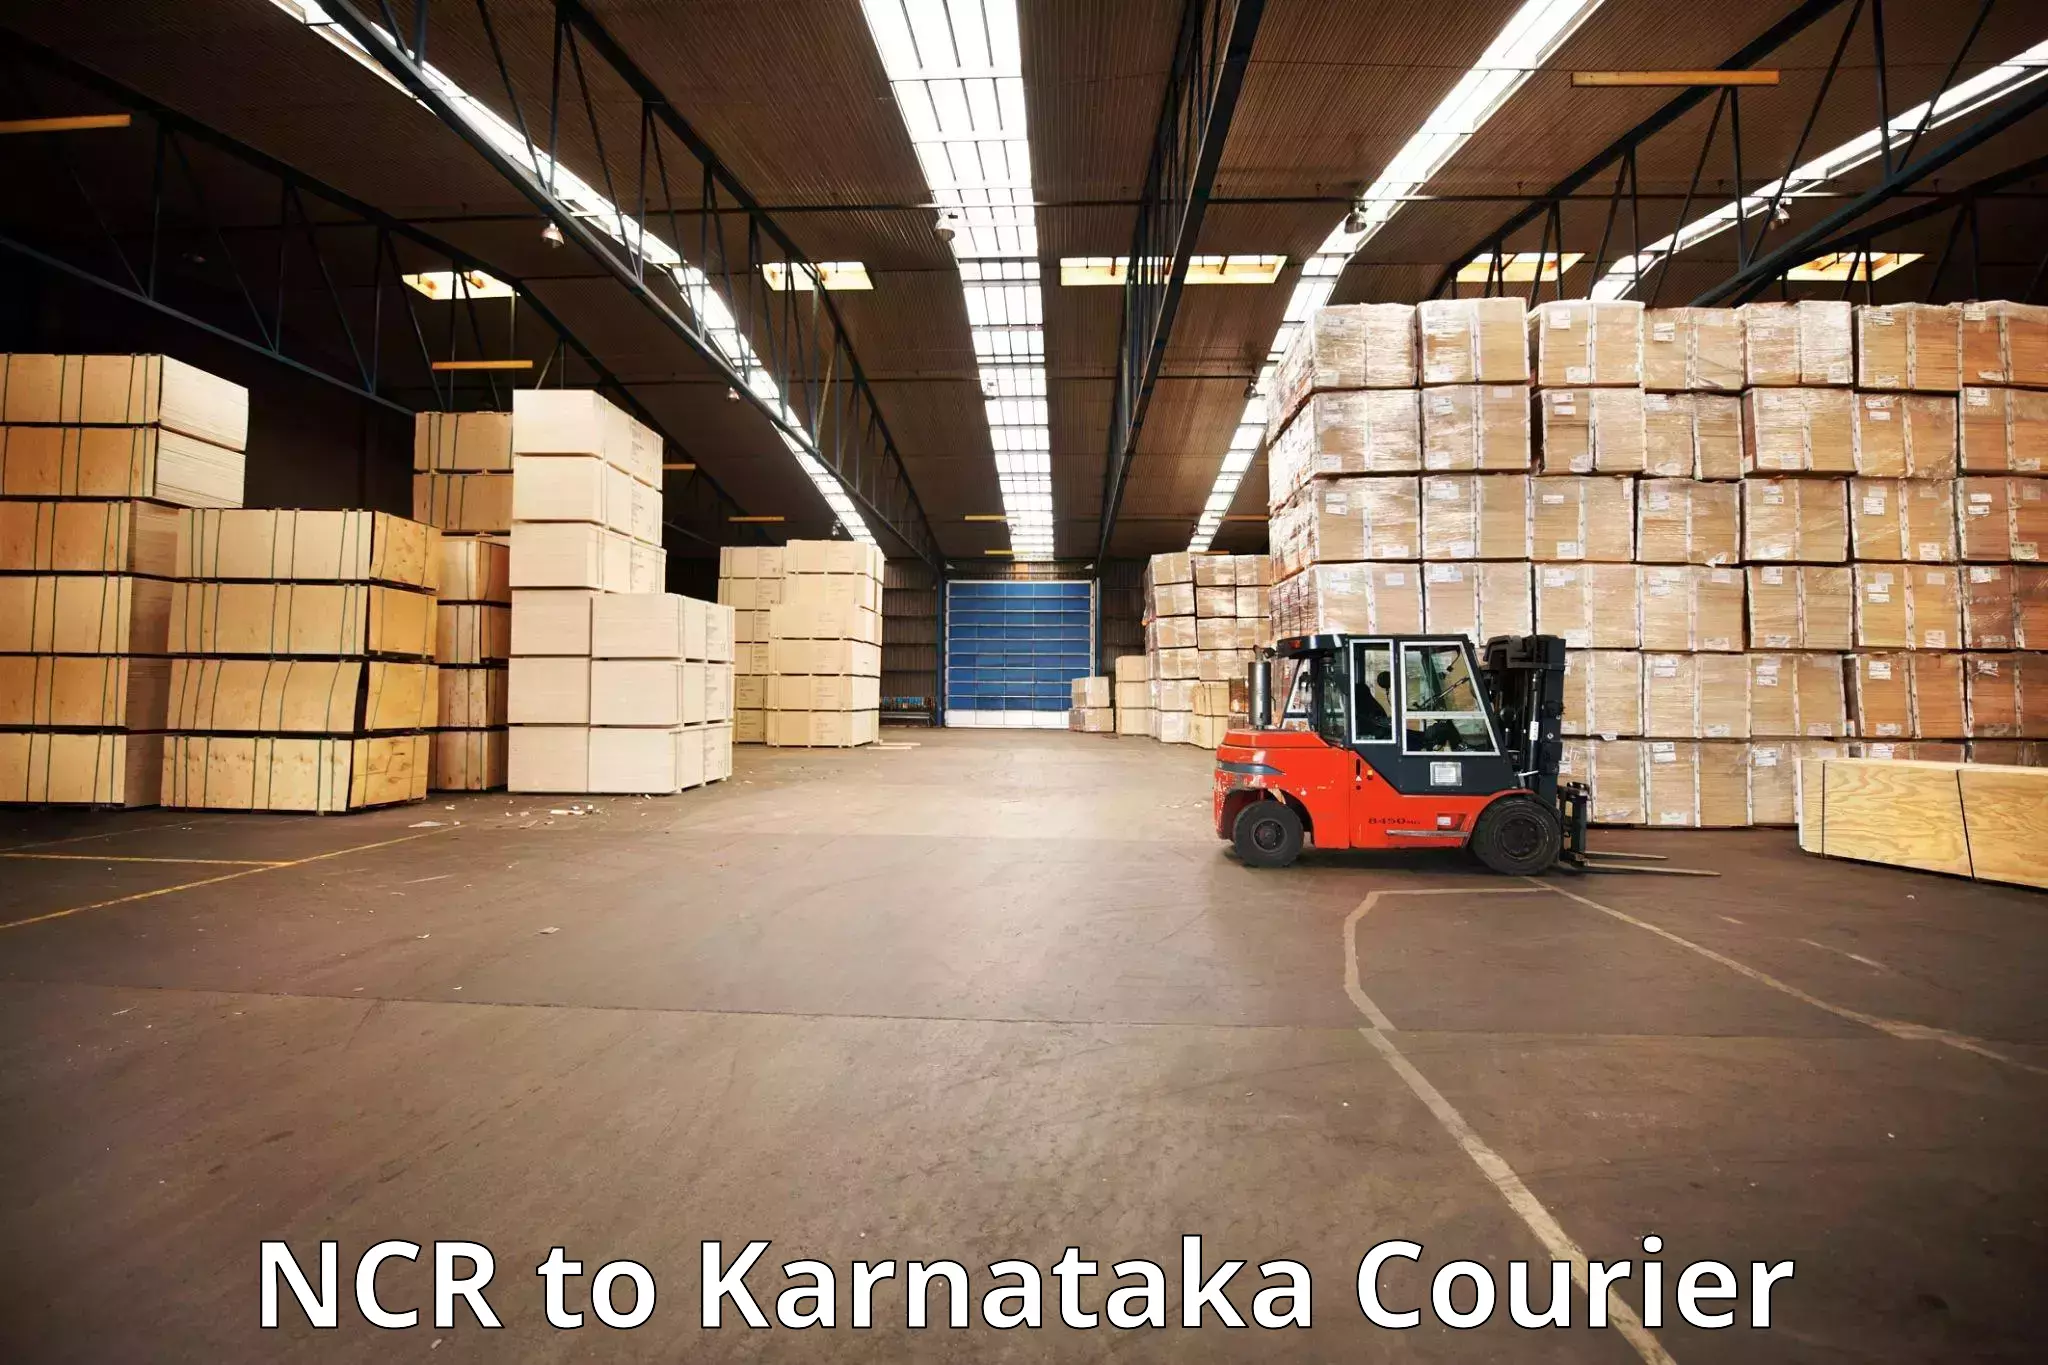 Baggage courier guide NCR to Karnataka